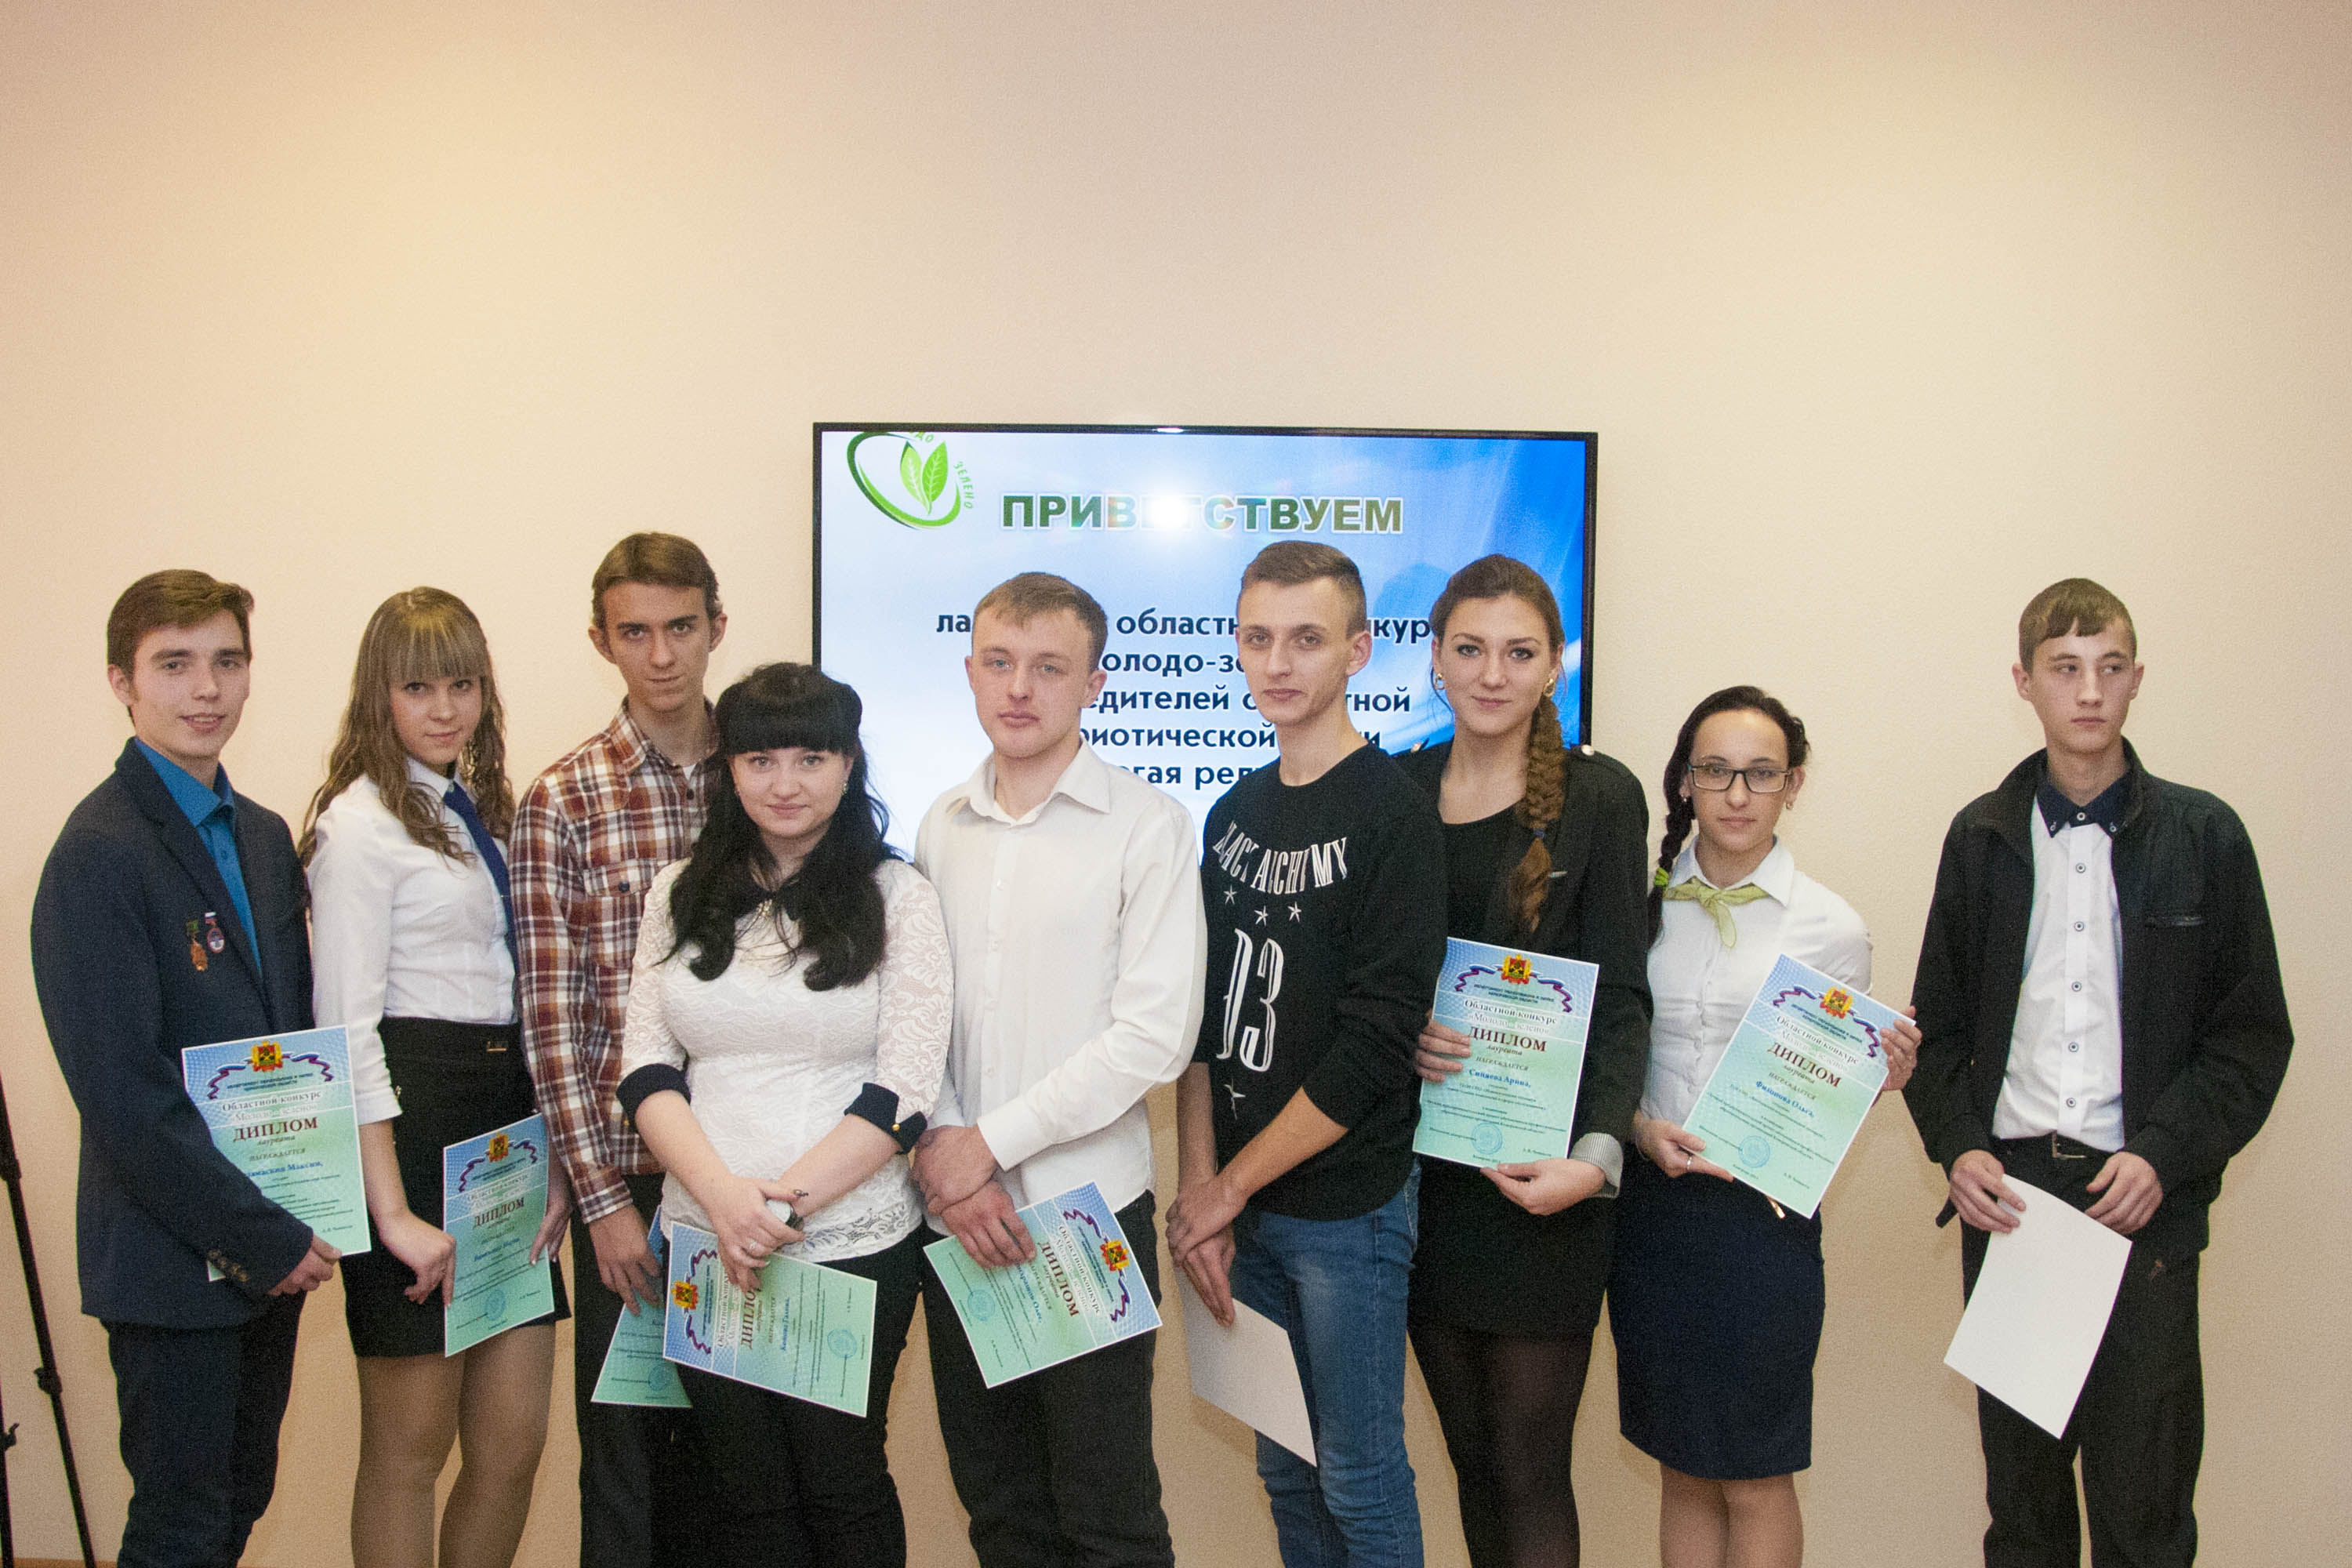 18 ноября в г. Кемерово прошел финал областного конкурса на лучший предпринимательский проект «Молодо - зелено» среди студентов техникумов и колледжей Кузбасса